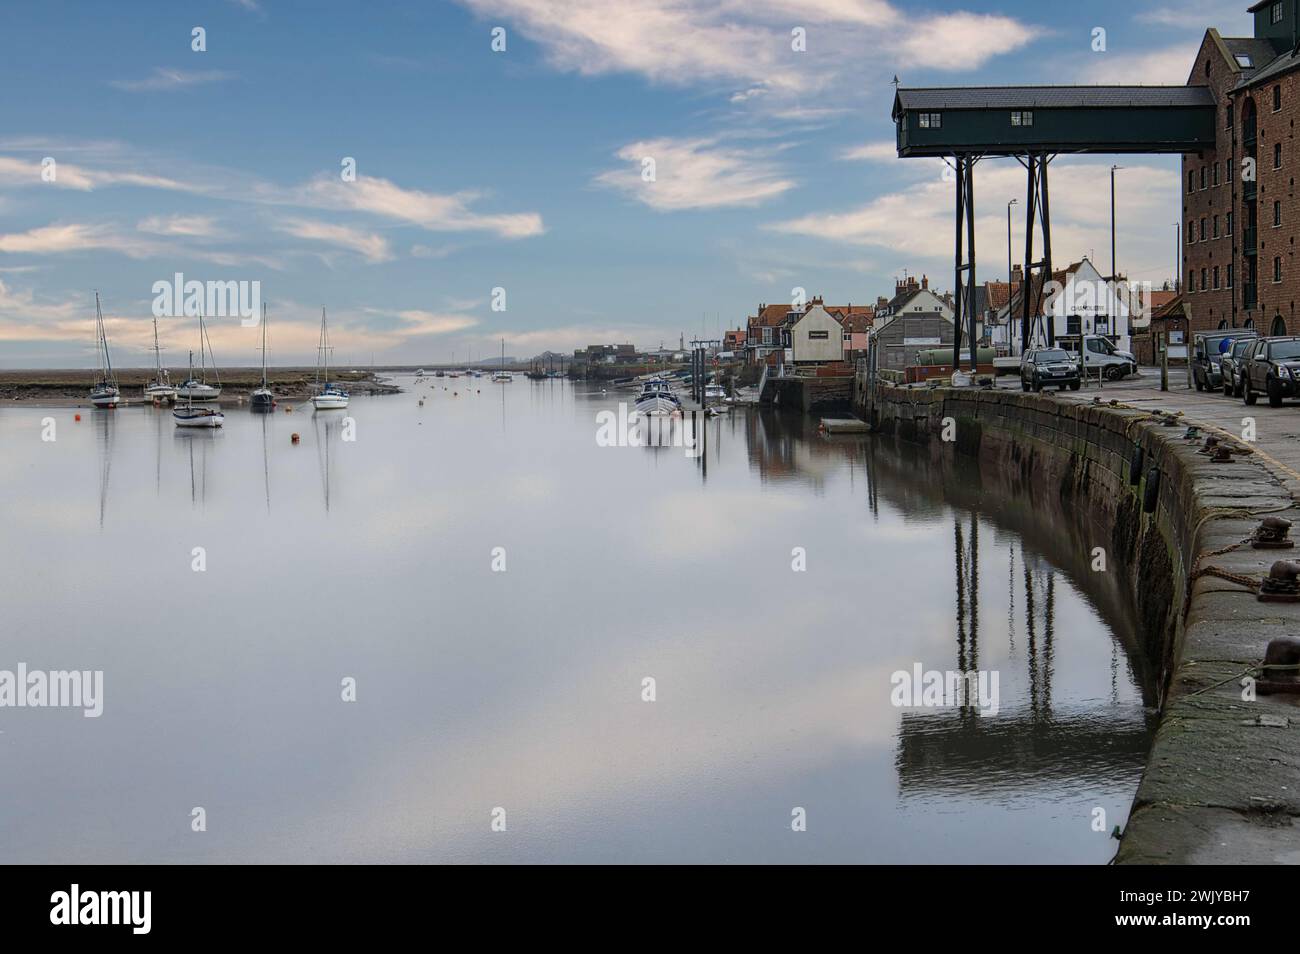 Wells-next-the-Sea, Norfolk, Angleterre, Royaume-Uni - bateaux à voile amarrés dans l'eau calme du port à marée haute. Bâtiment de grenier et ciel reflété dans l'eau Banque D'Images